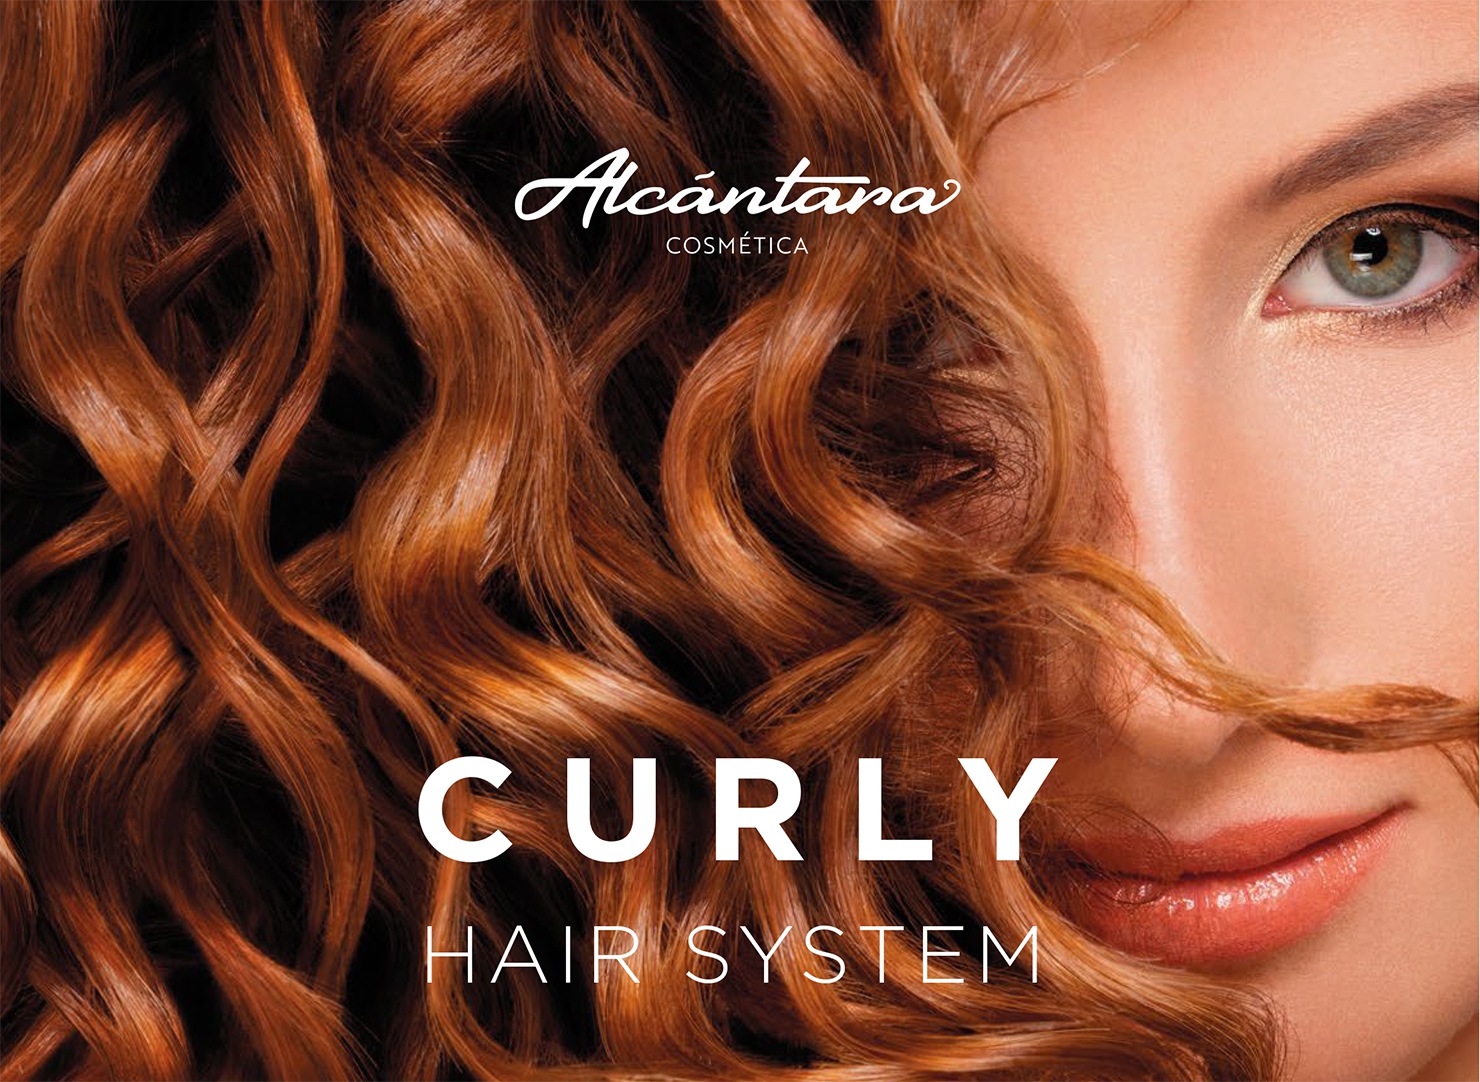 Descubre lo nuevo Alcantara Cosmetica, CURLY HAIR SYSTEM